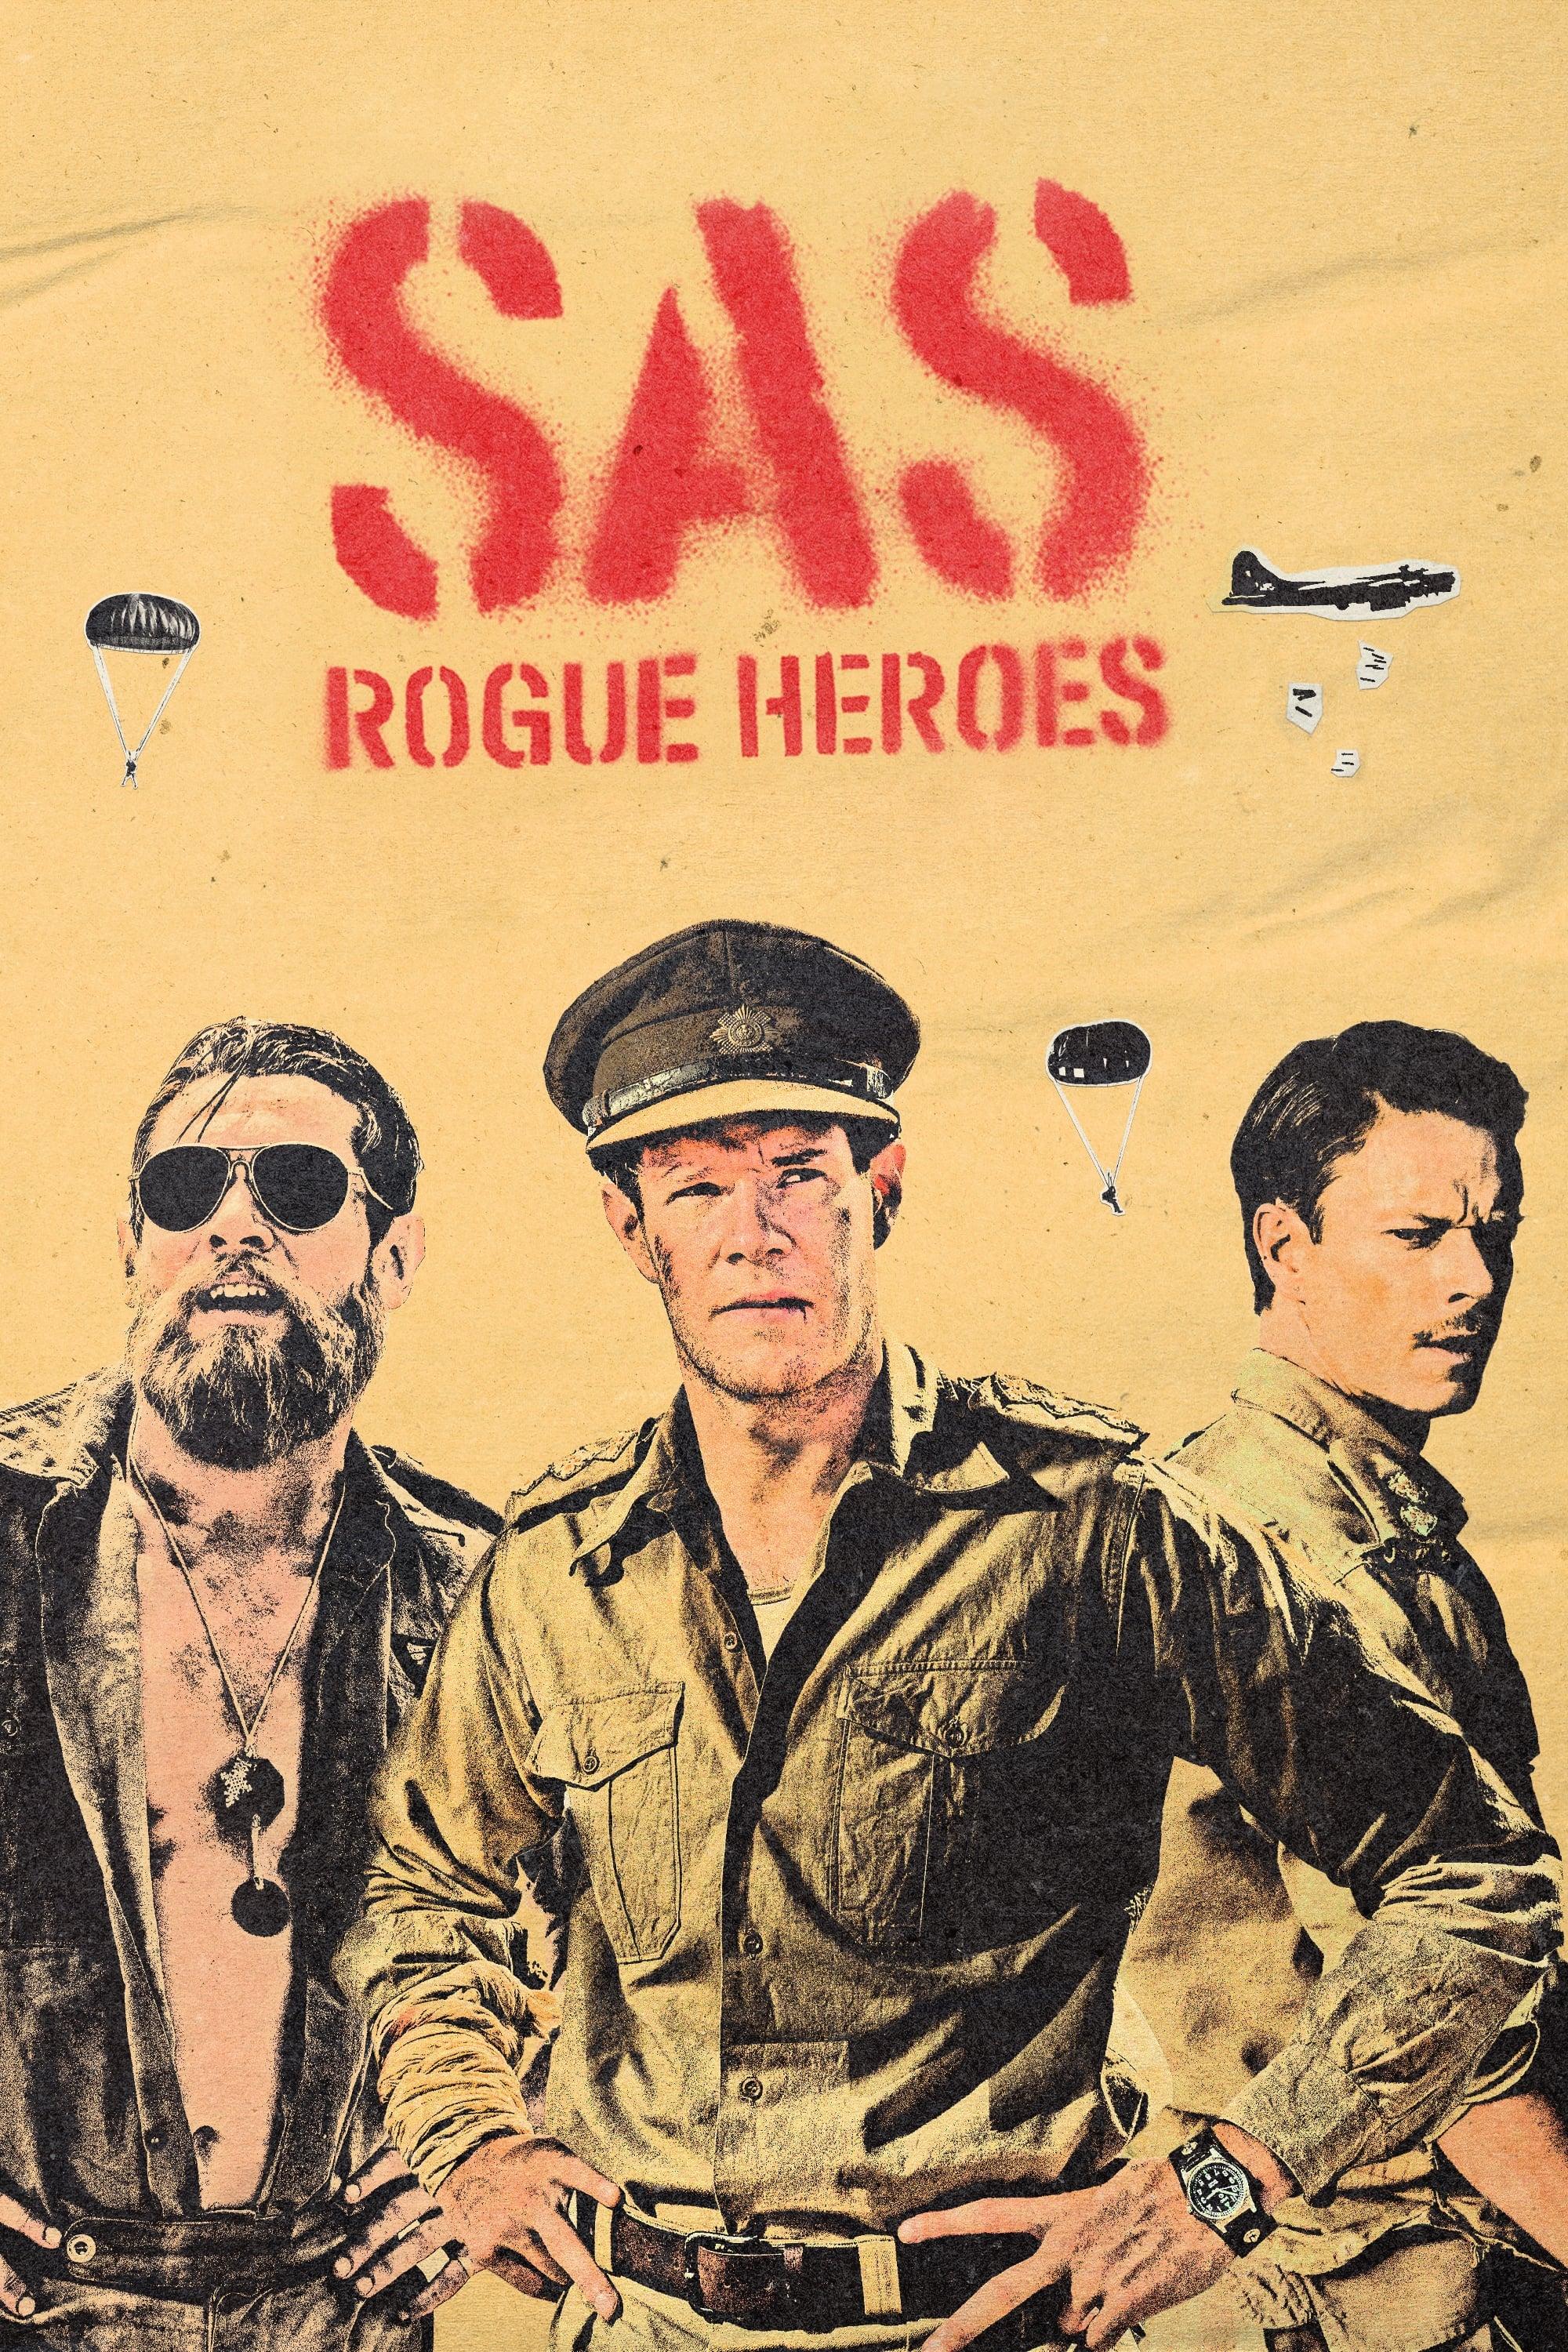 SAS: Rogue Heroes poster